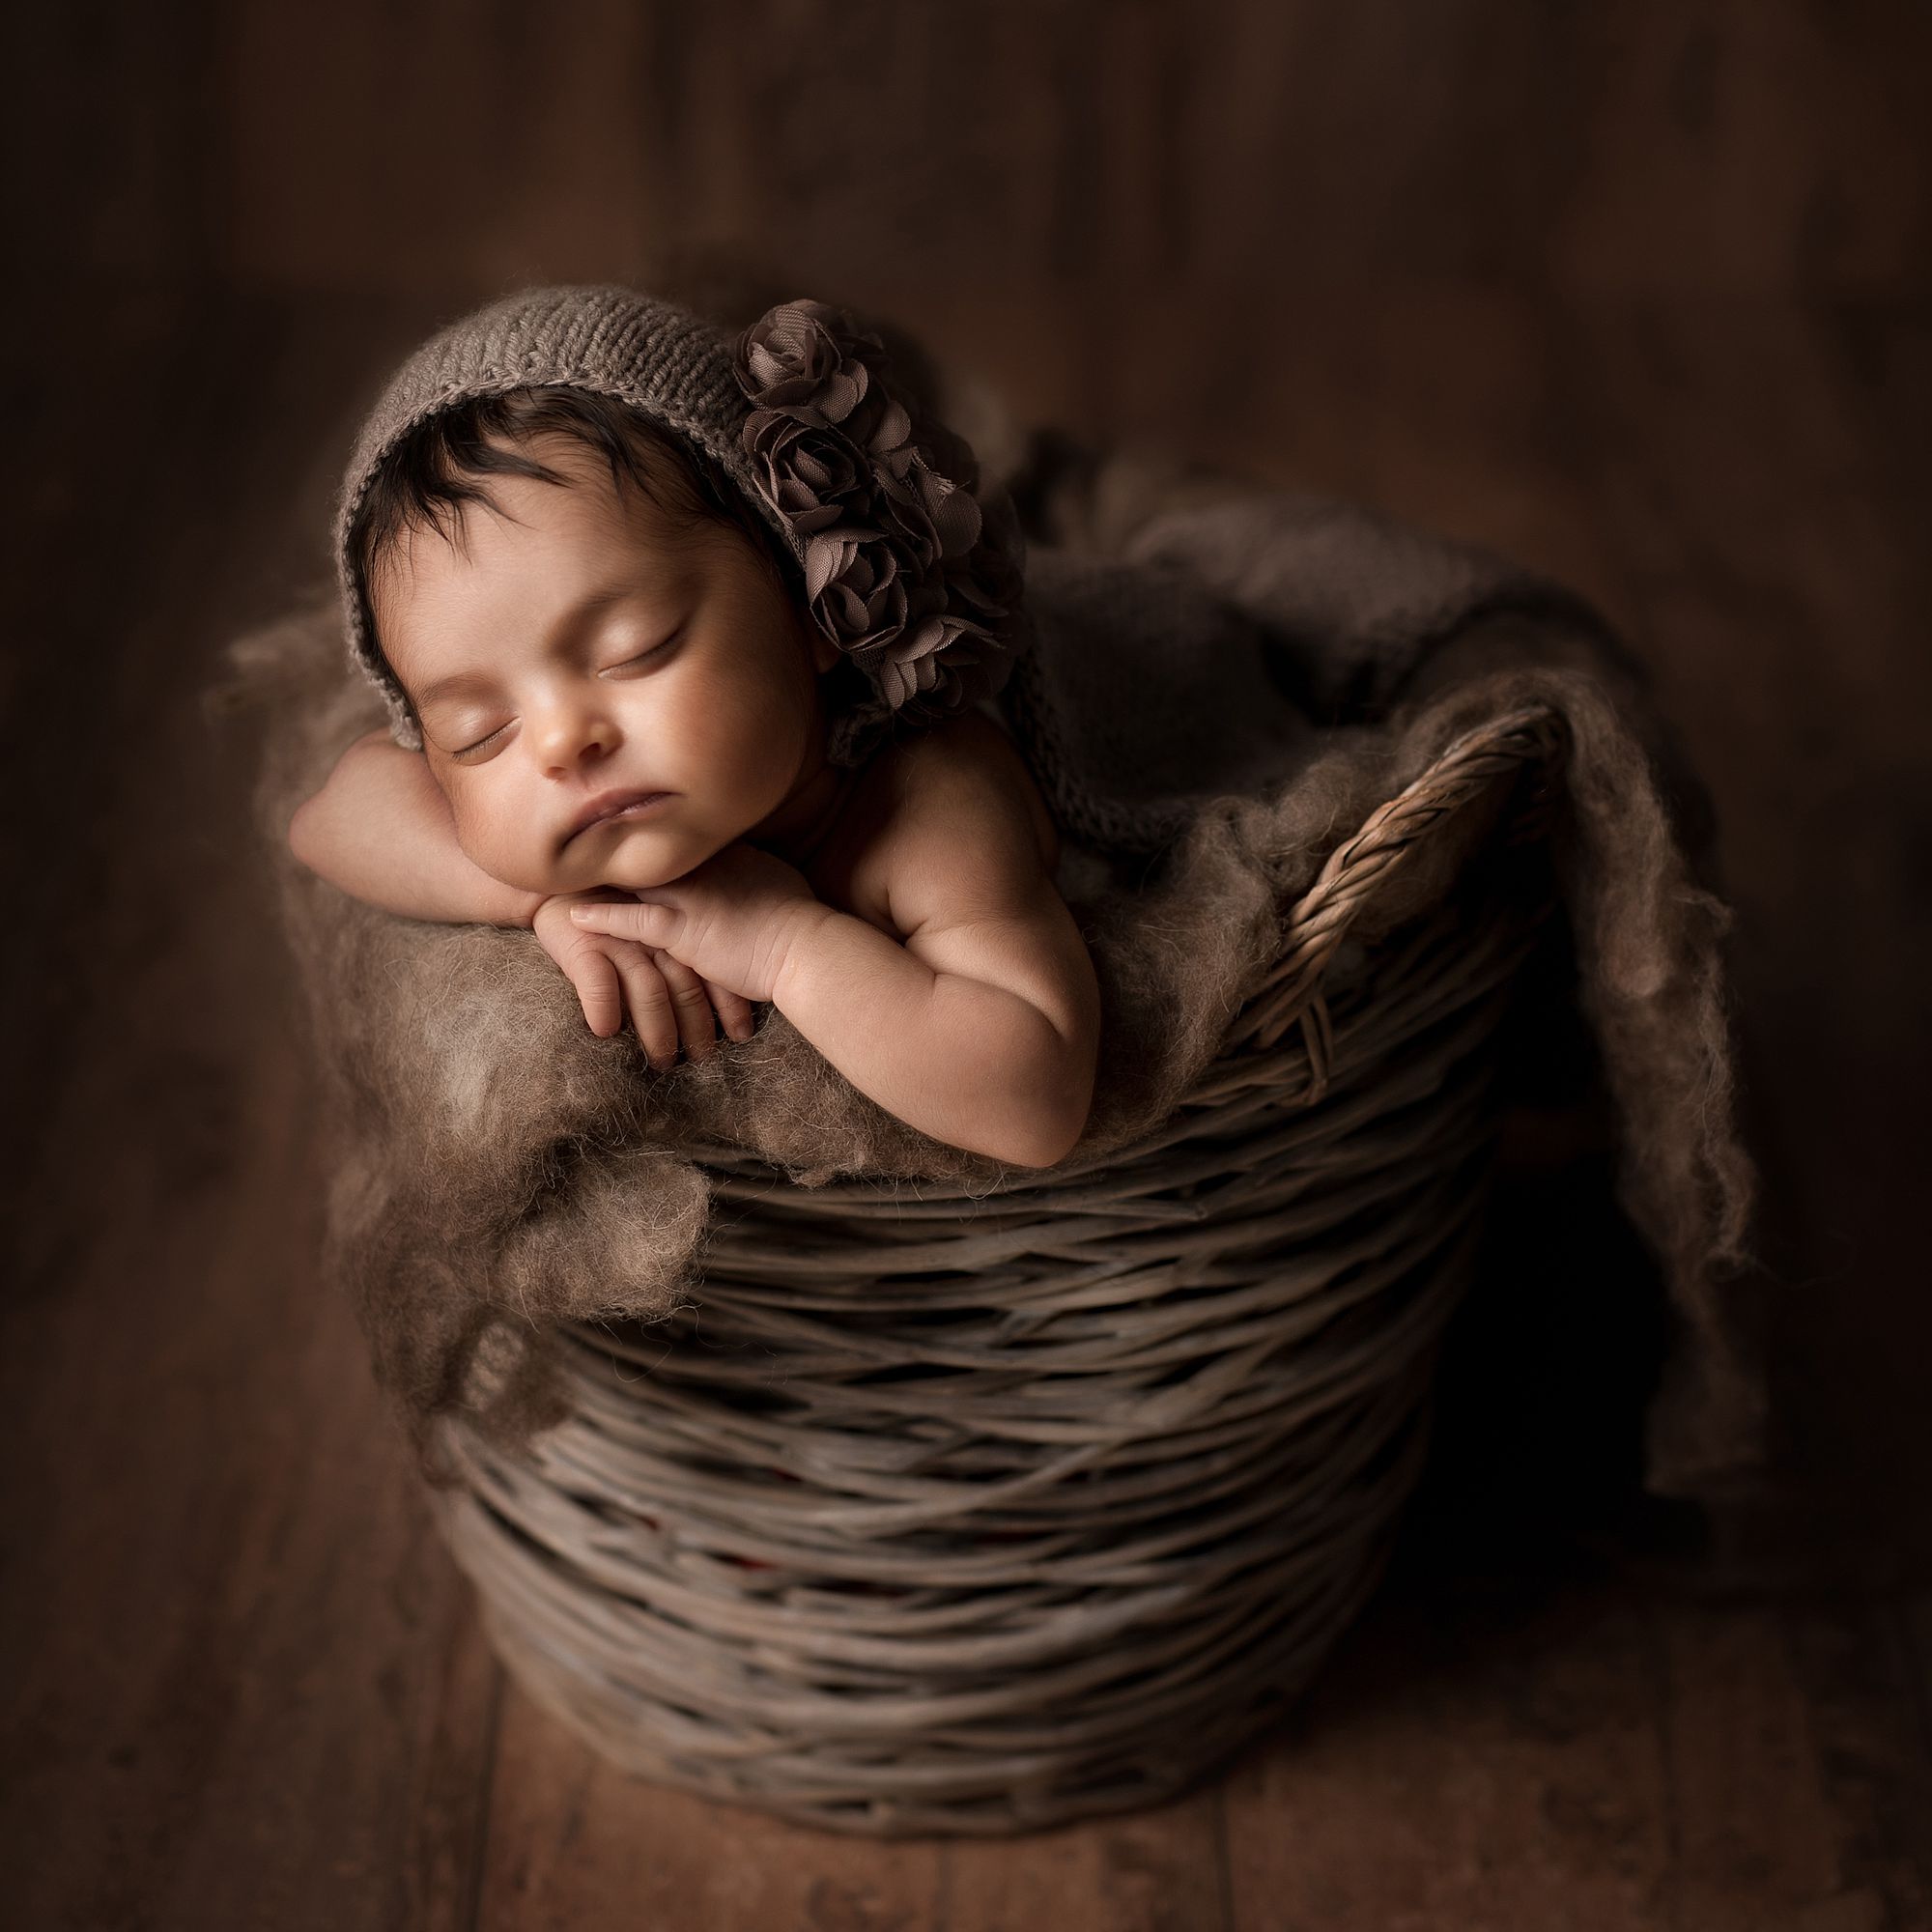 fotografa-newborn-reggio-emilia-prisca-caroli